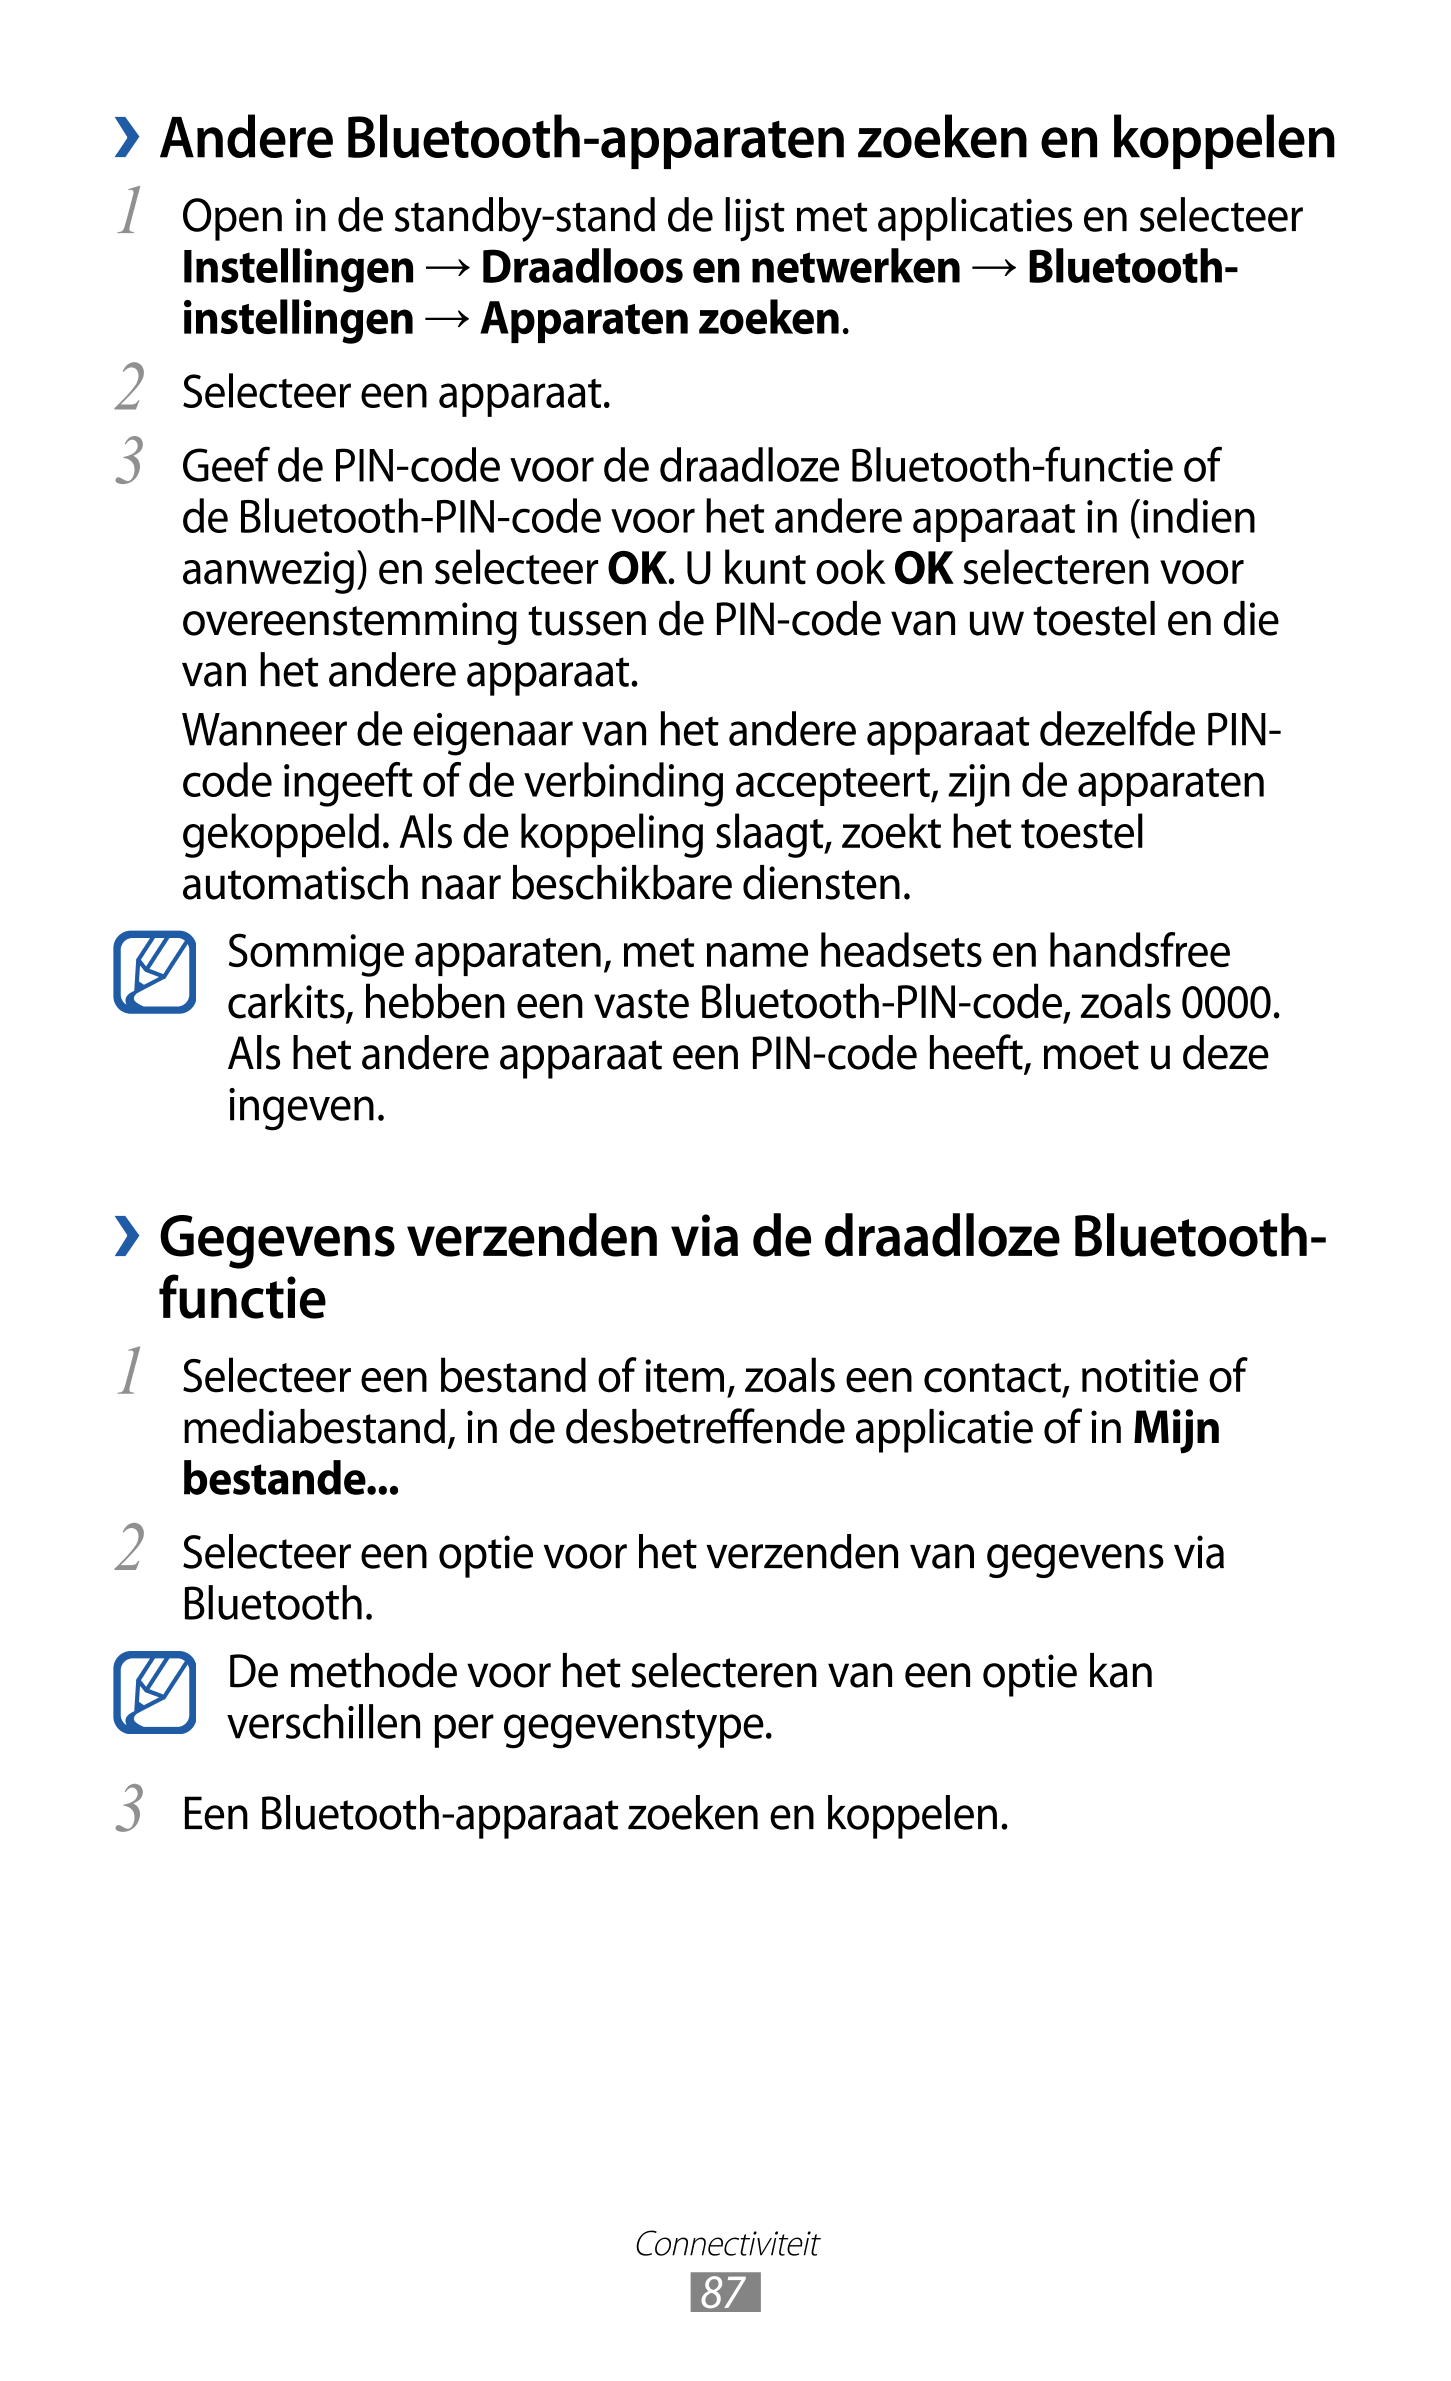   Andere Bluetooth-apparaten zoeken en koppelen
1  Open in de standby-stand de lijst met applicaties en selecteer 
Instellingen 